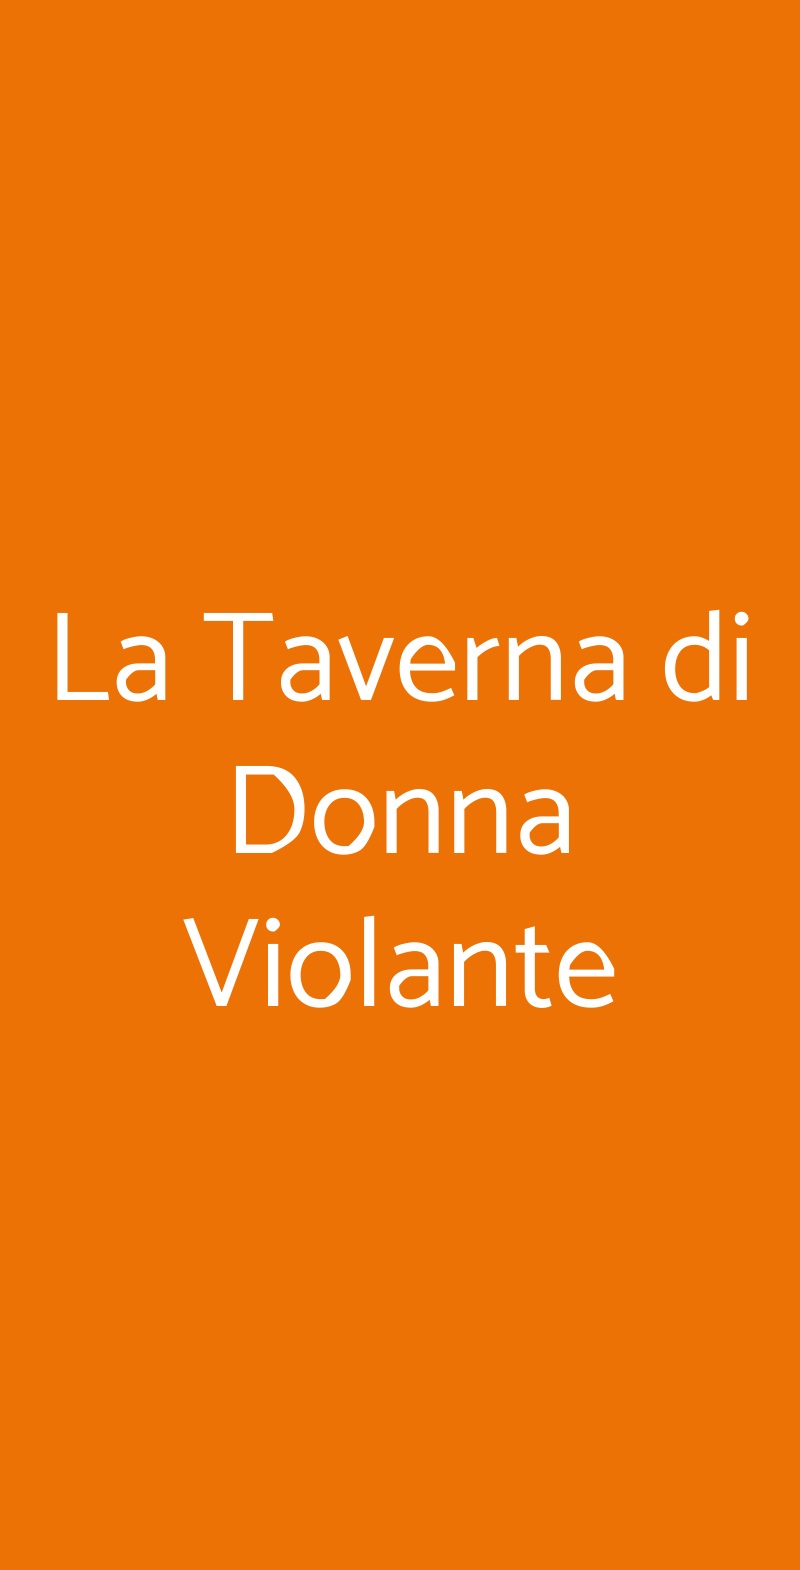 La Taverna di Donna Violante Savignone menù 1 pagina